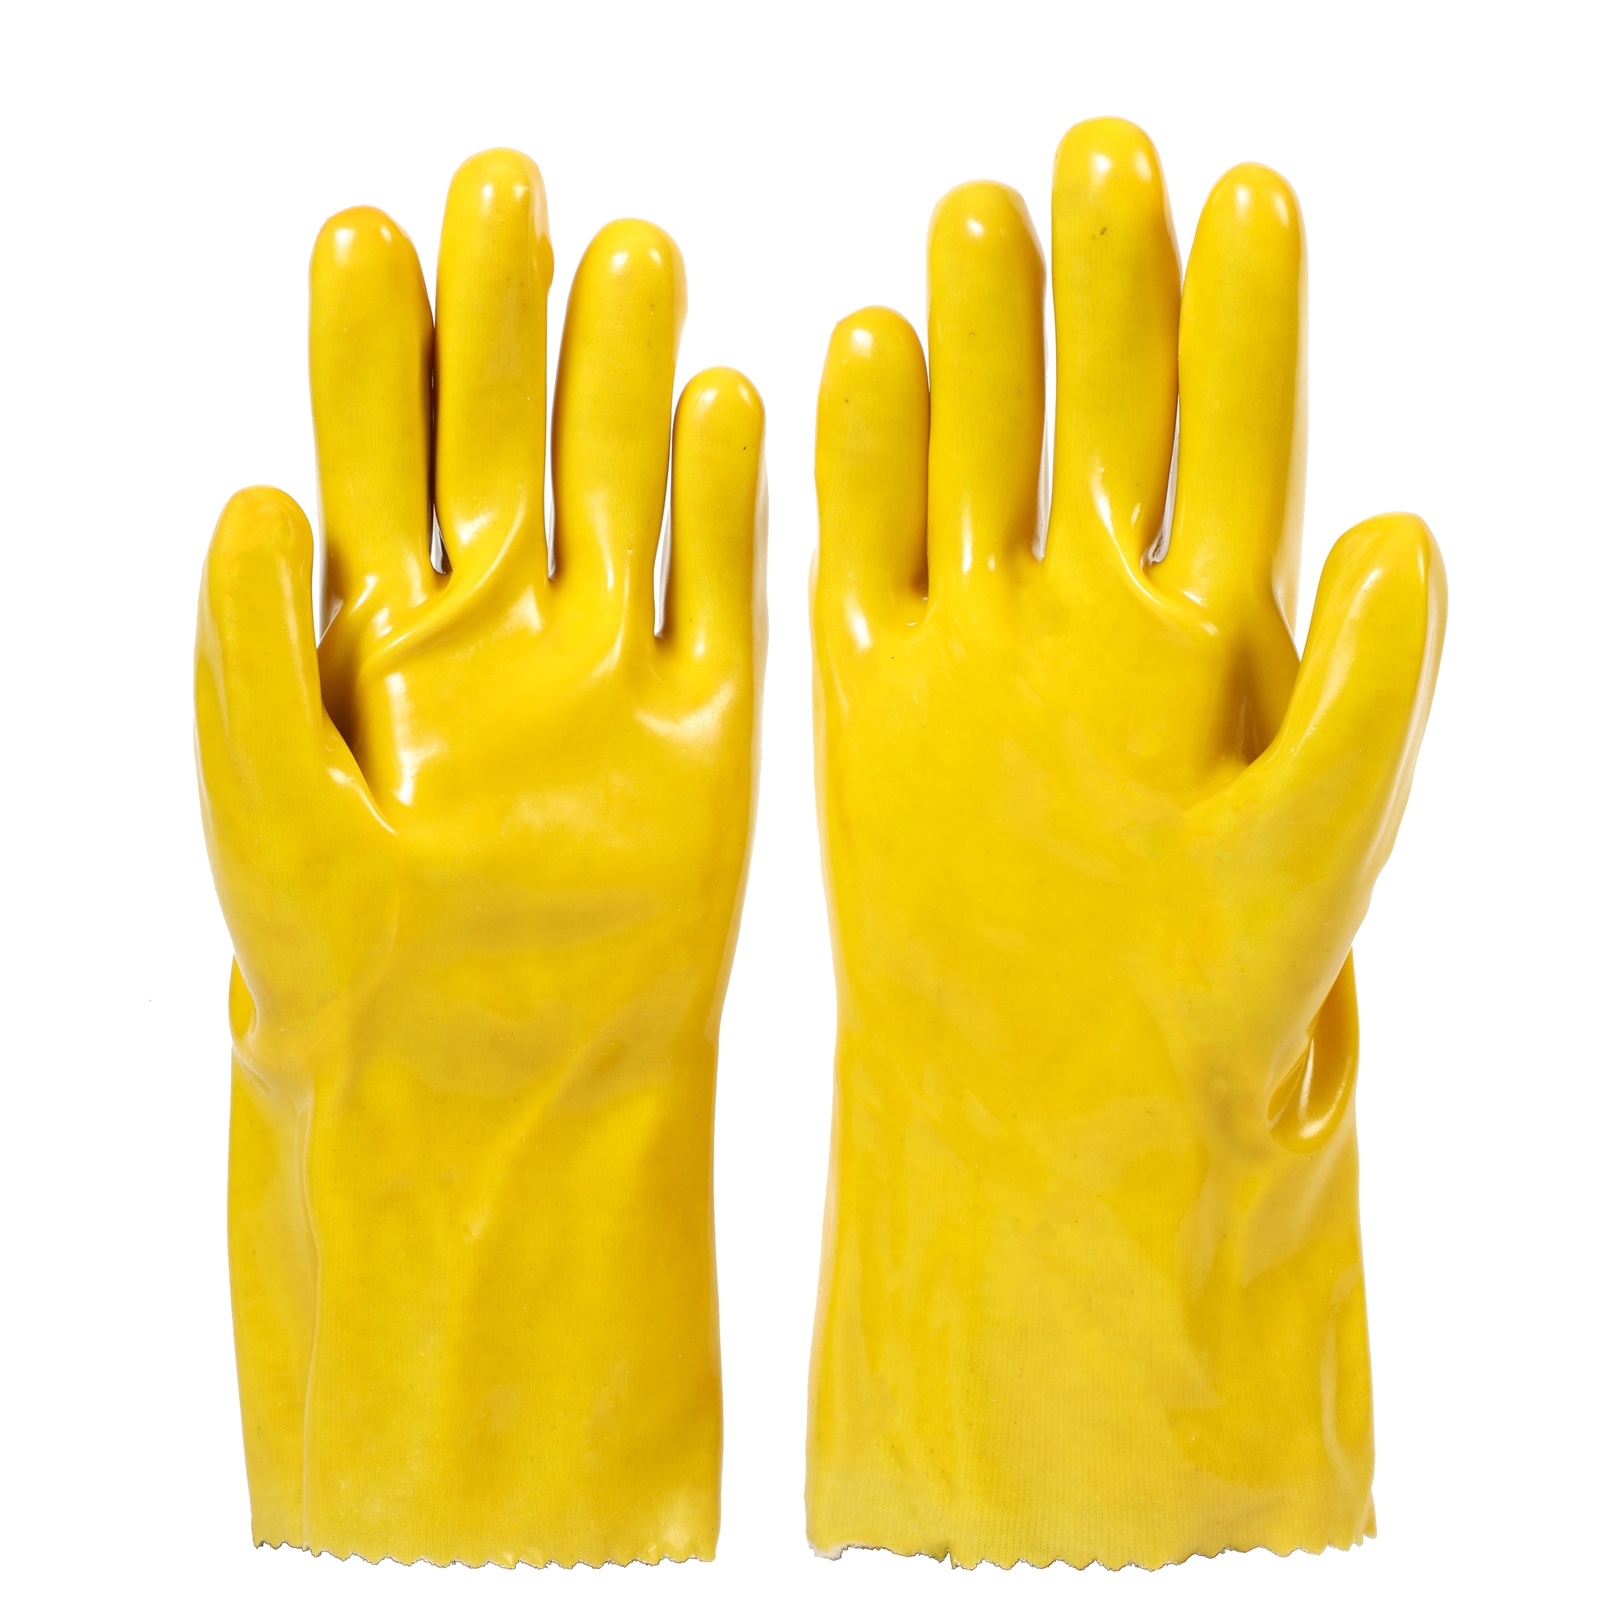 PVC-dyppede hansker, syre- og oljebestandige, anti-giftig og begroing, egnet for kontakt med plantevernmidler, kjemisk gjødsel, giftige stoffer